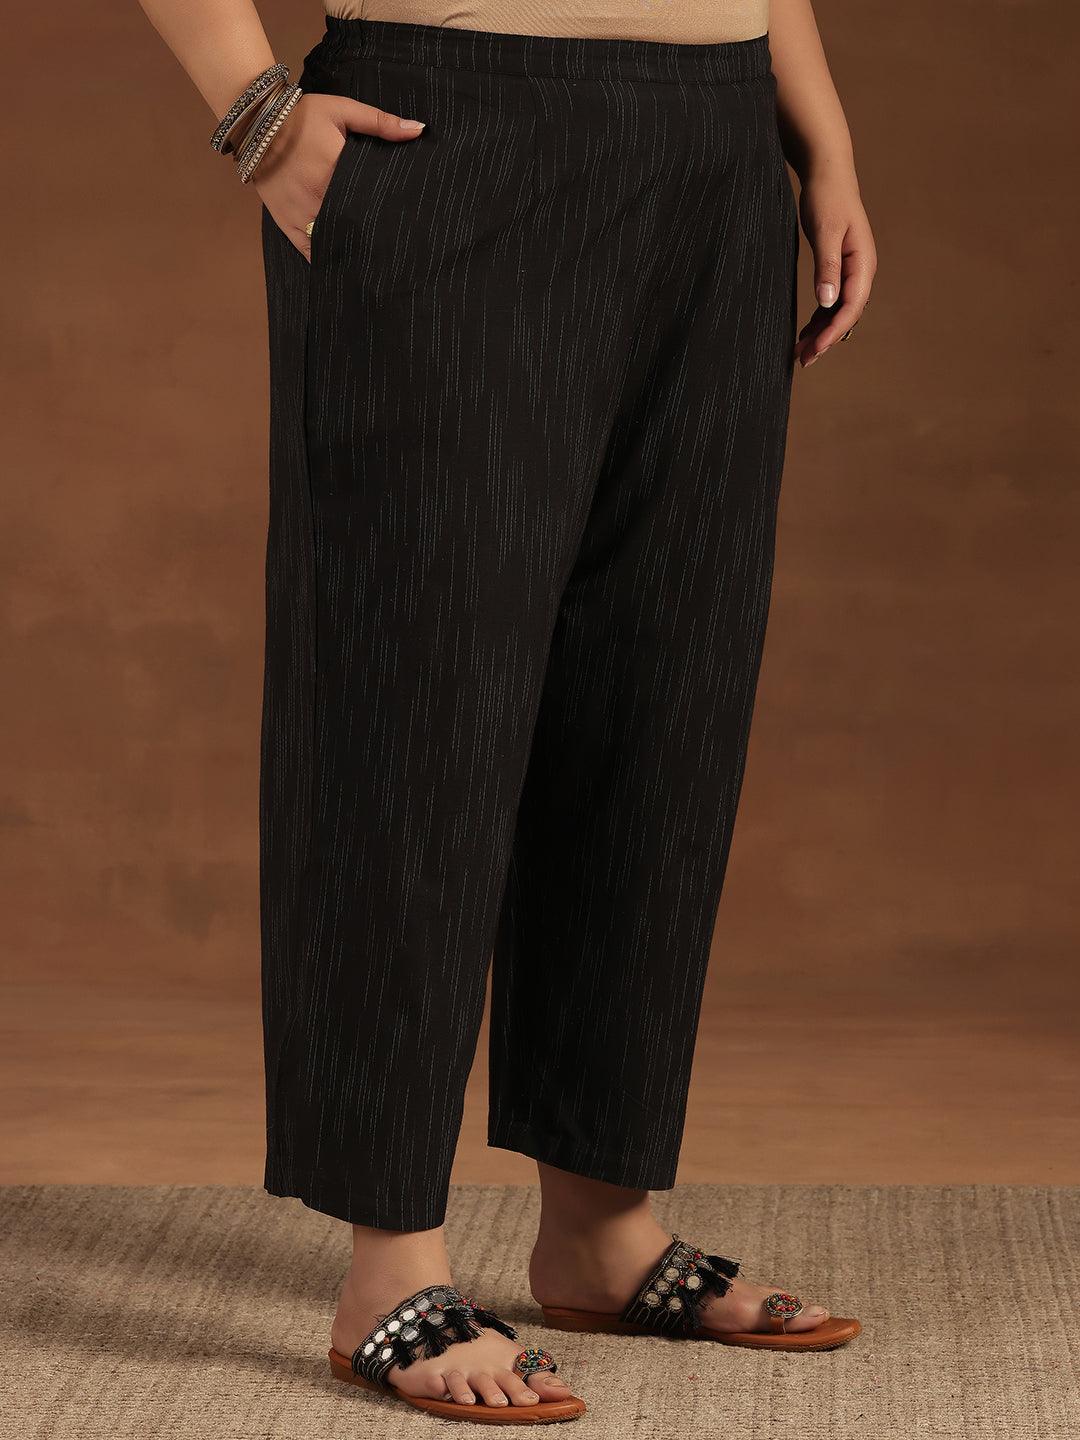 Plus Size Black Self Design Cotton Blend Straight Suit With Dupatta